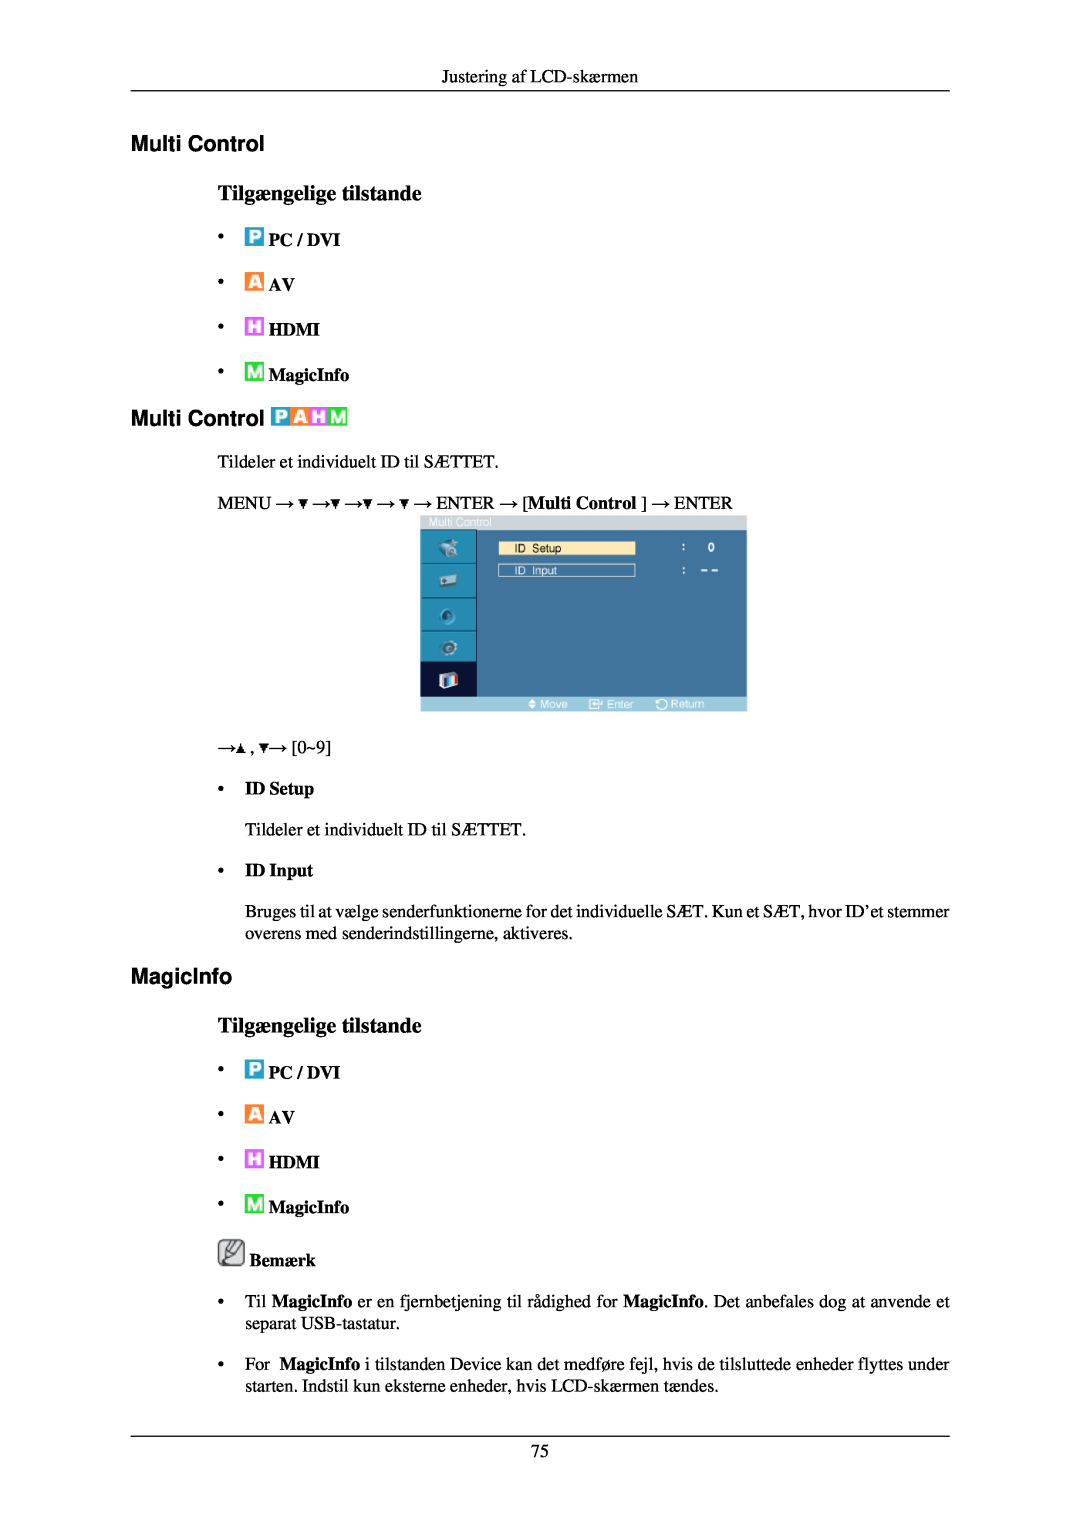 Samsung LH40TCUMBG/EN manual Multi Control, PC / DVI AV HDMI MagicInfo, ID Setup, ID Input, Tilgængelige tilstande 